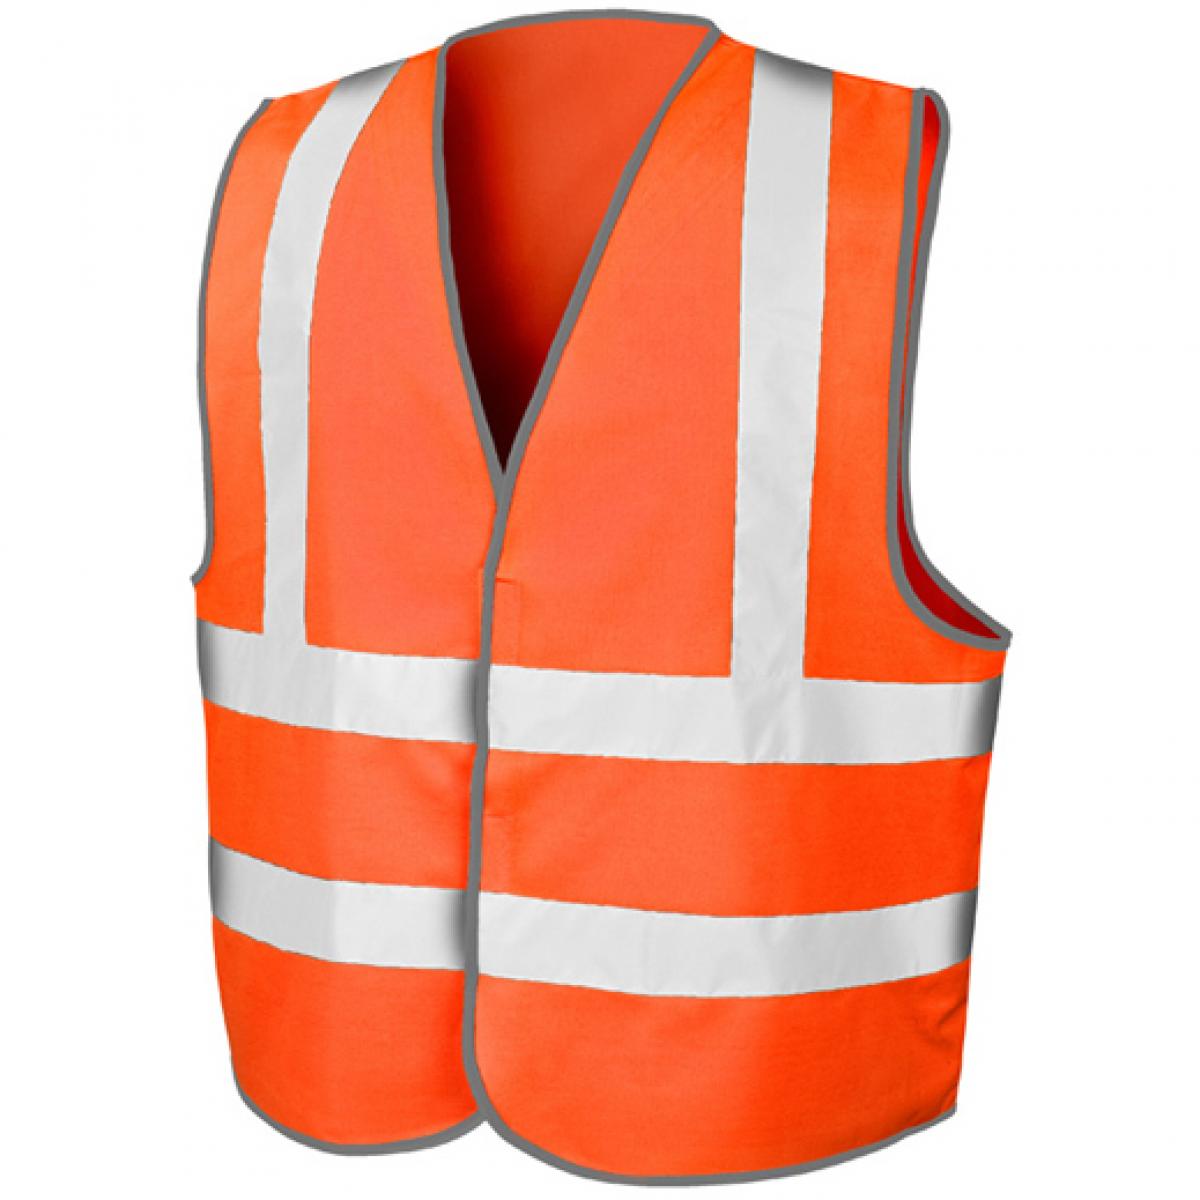 Hersteller: Result Core Herstellernummer: R201X Artikelbezeichnung: Herren Motorway Vest / Zertifiziert nach ISOEN20471:2013 Farbe: Fluorescent Orange